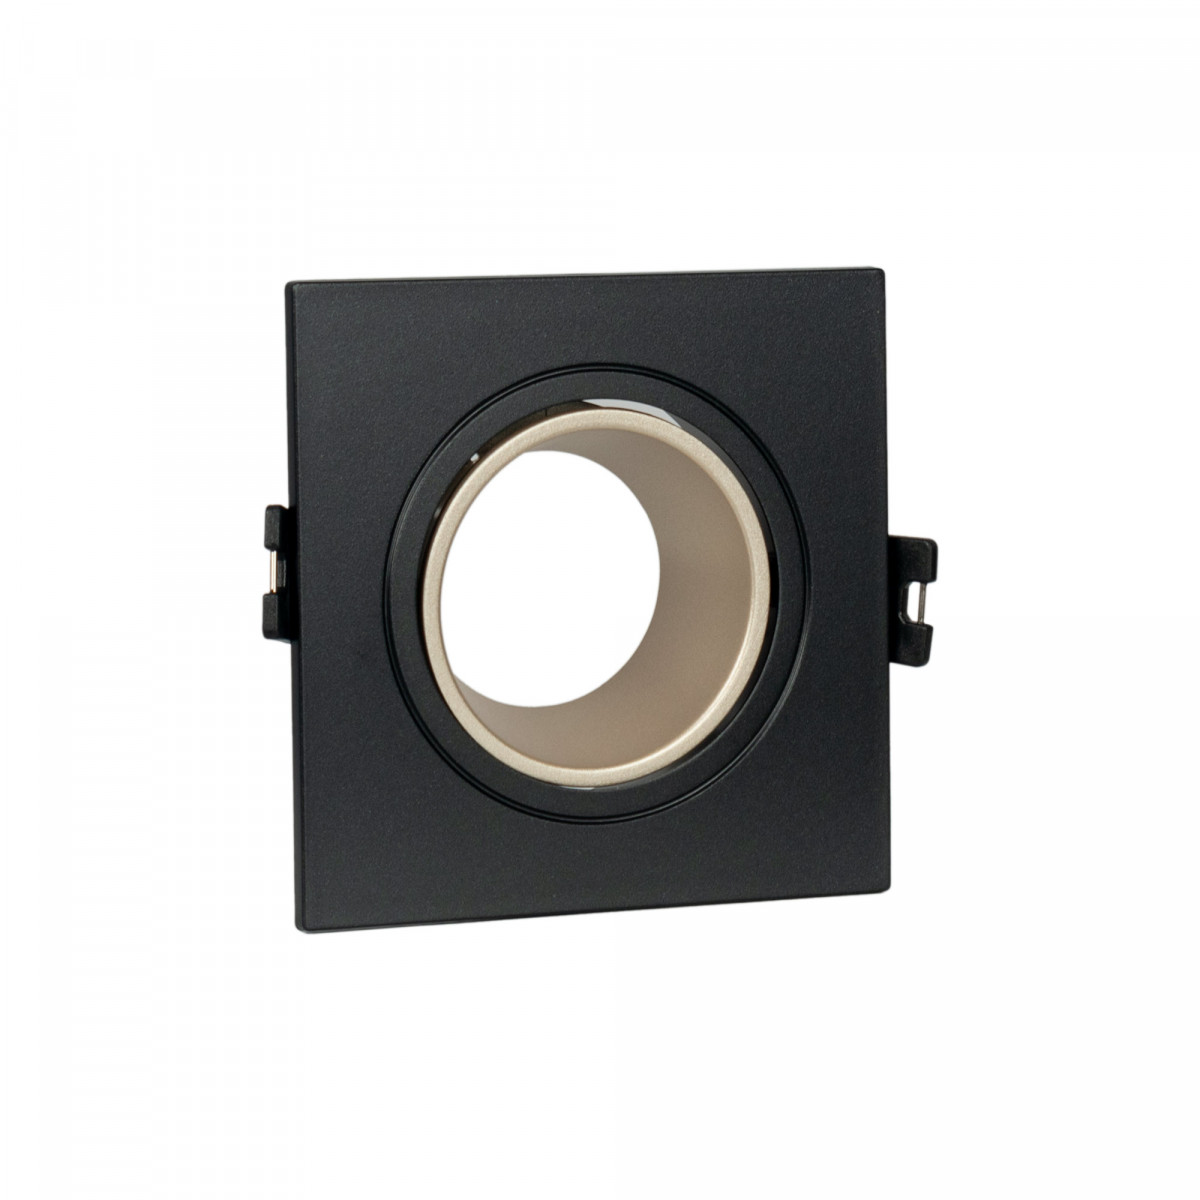 Aro de downlight quadrado basculante para lâmpada GU10 / MR16 - Low UGR - Recorte Ø75 mm - preto e champanhe